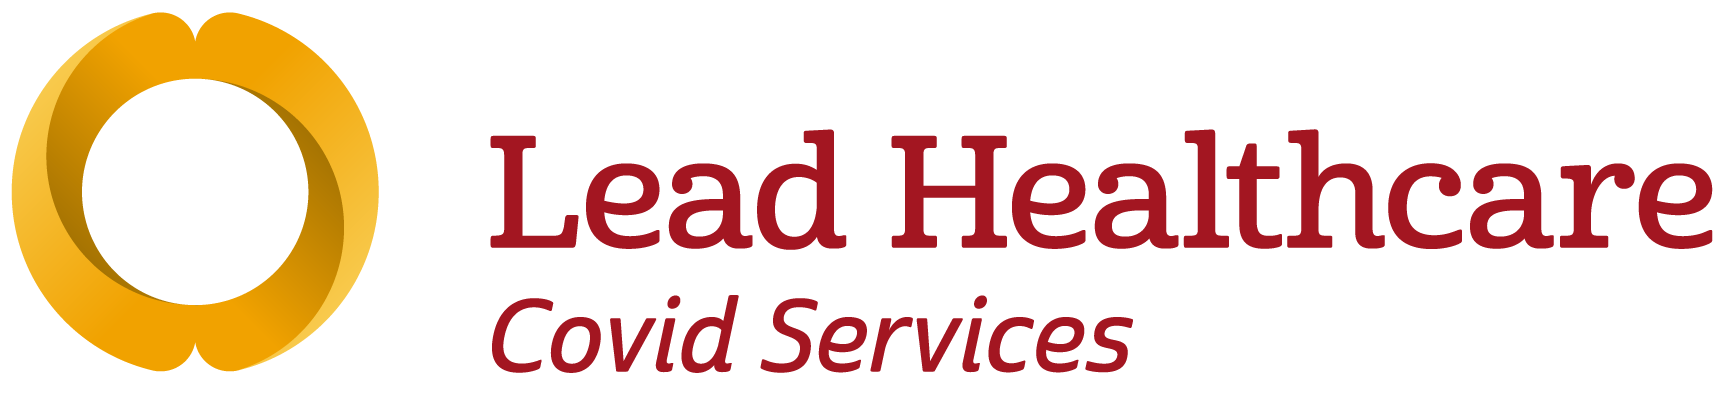 Lead Healthcare Covid service